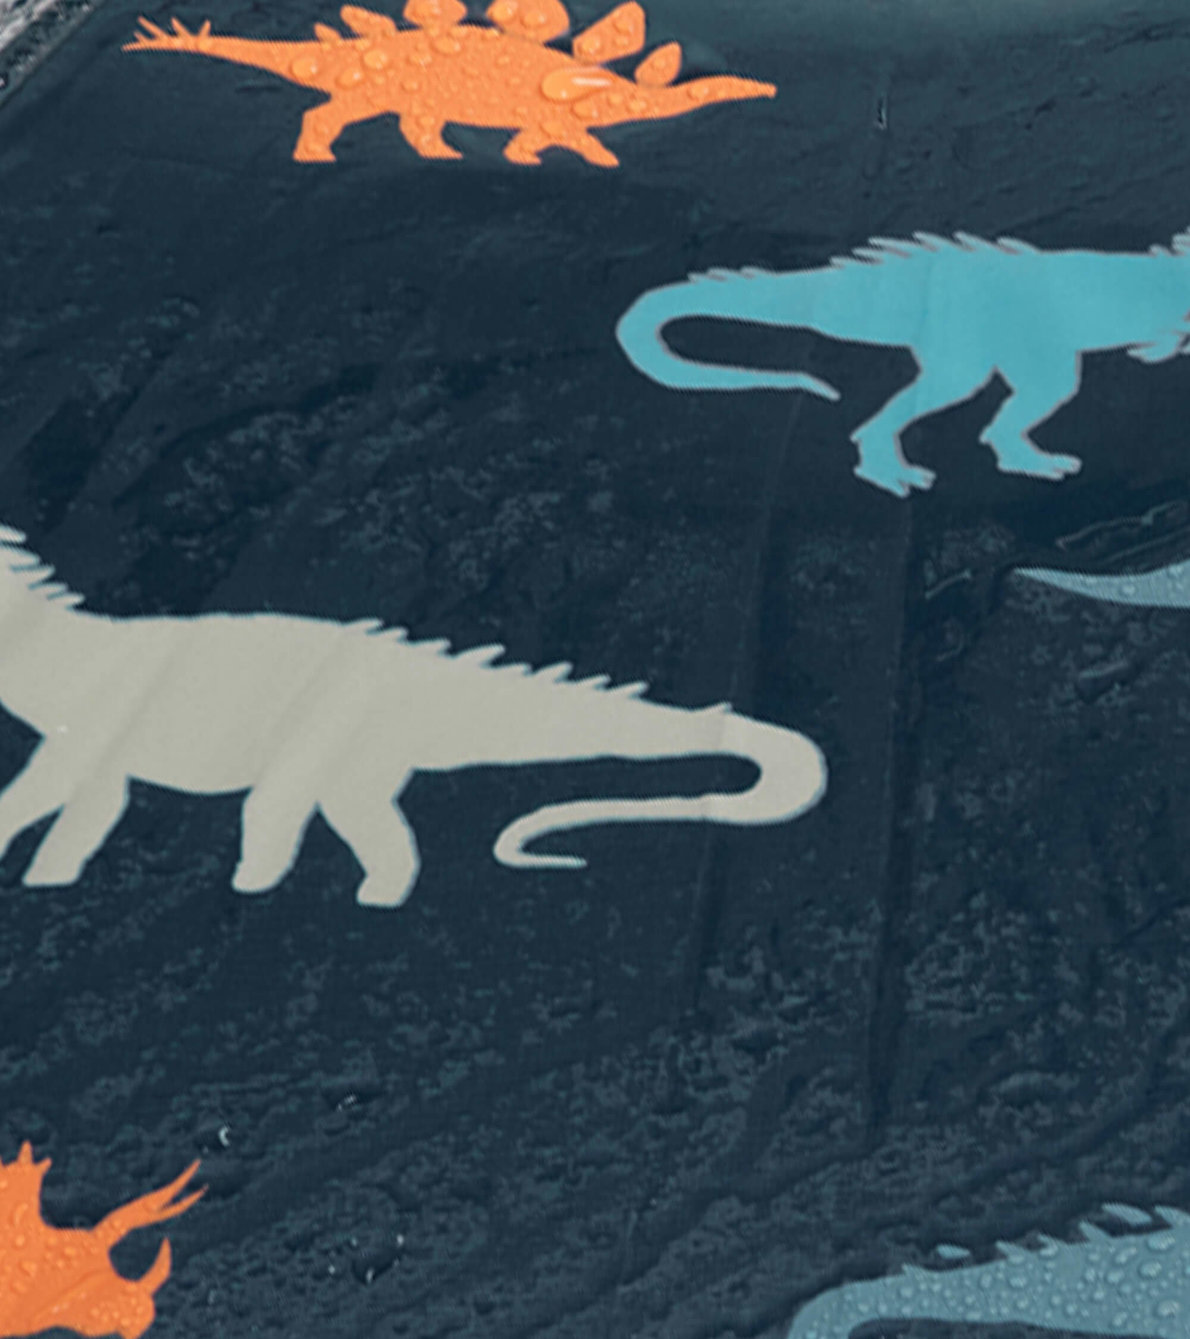 Agrandir l'image de Parapluie à couleur changeante pour enfant – Silhouettes de dinosaures